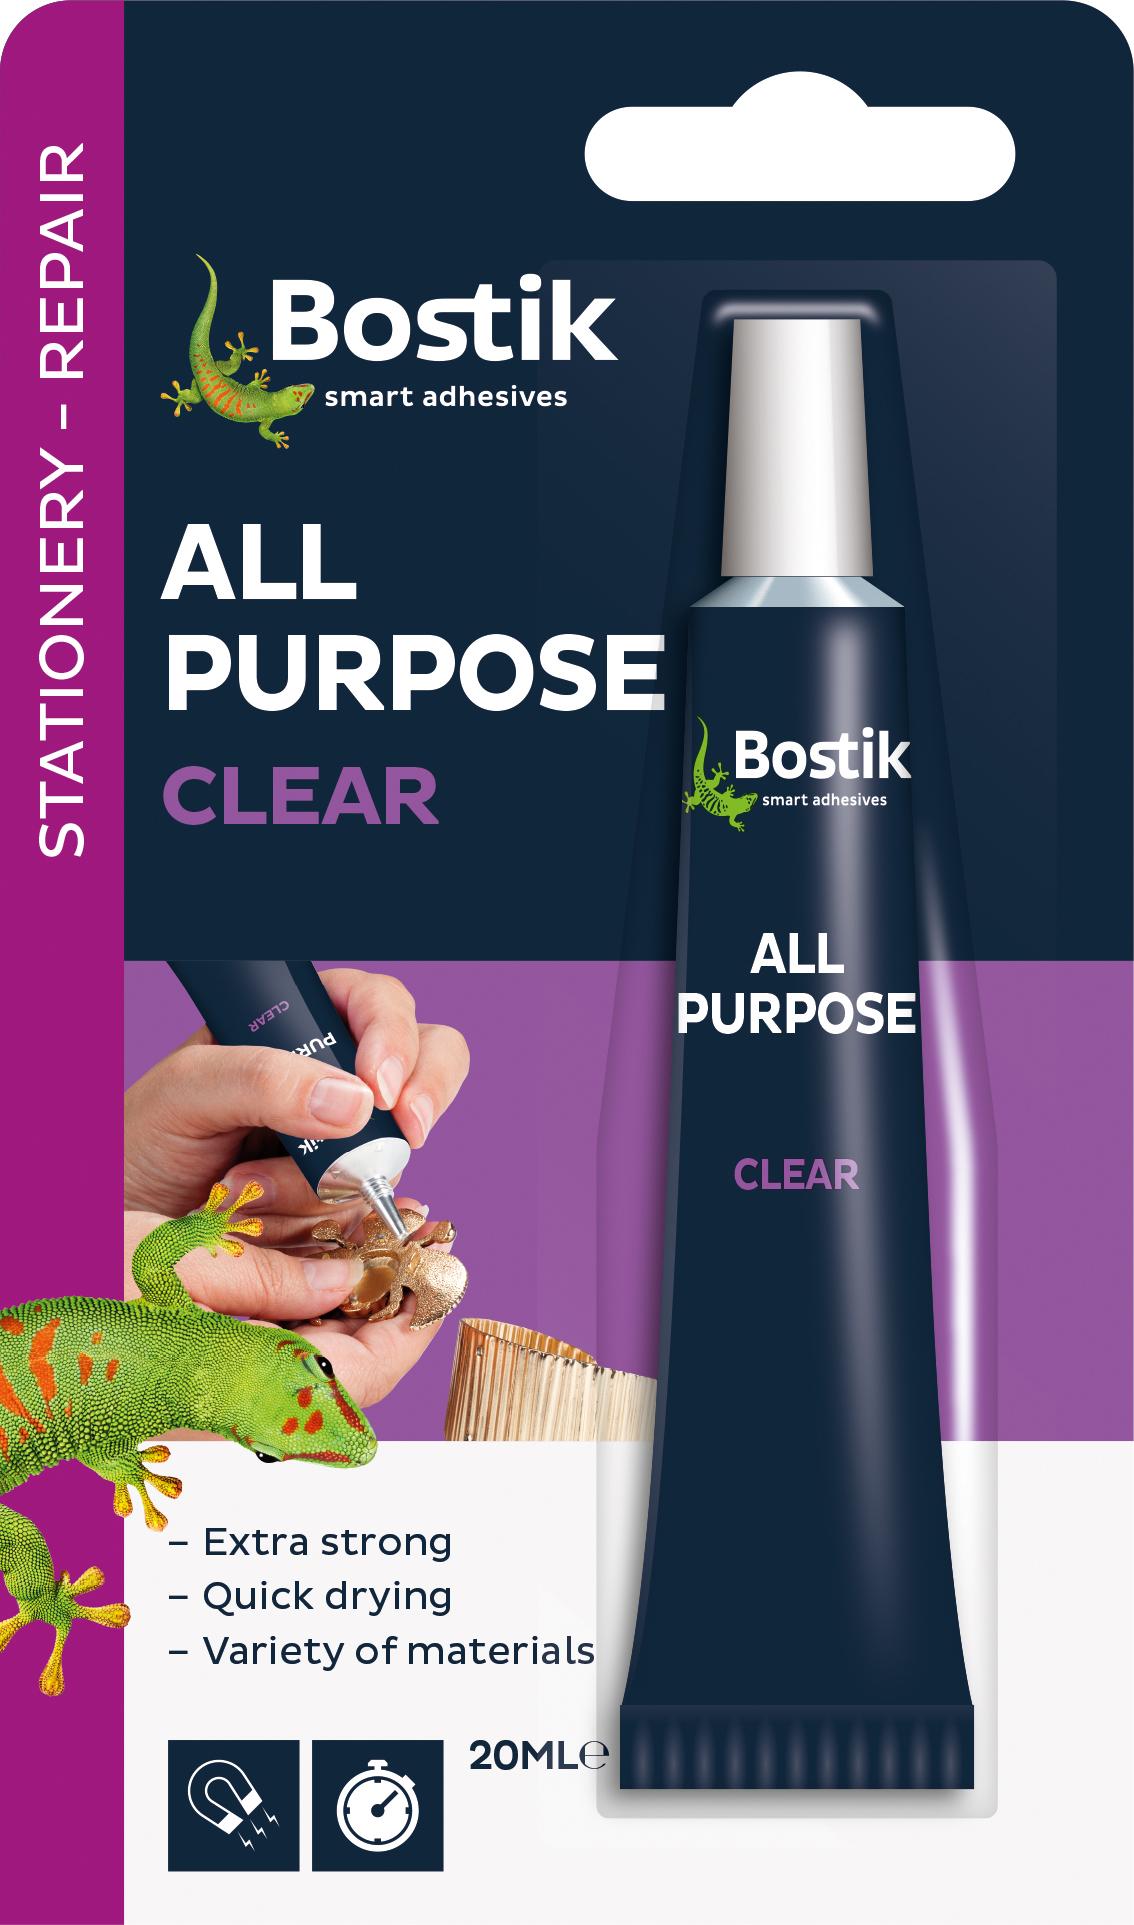 Bostik All Purpose Clear Adhesive